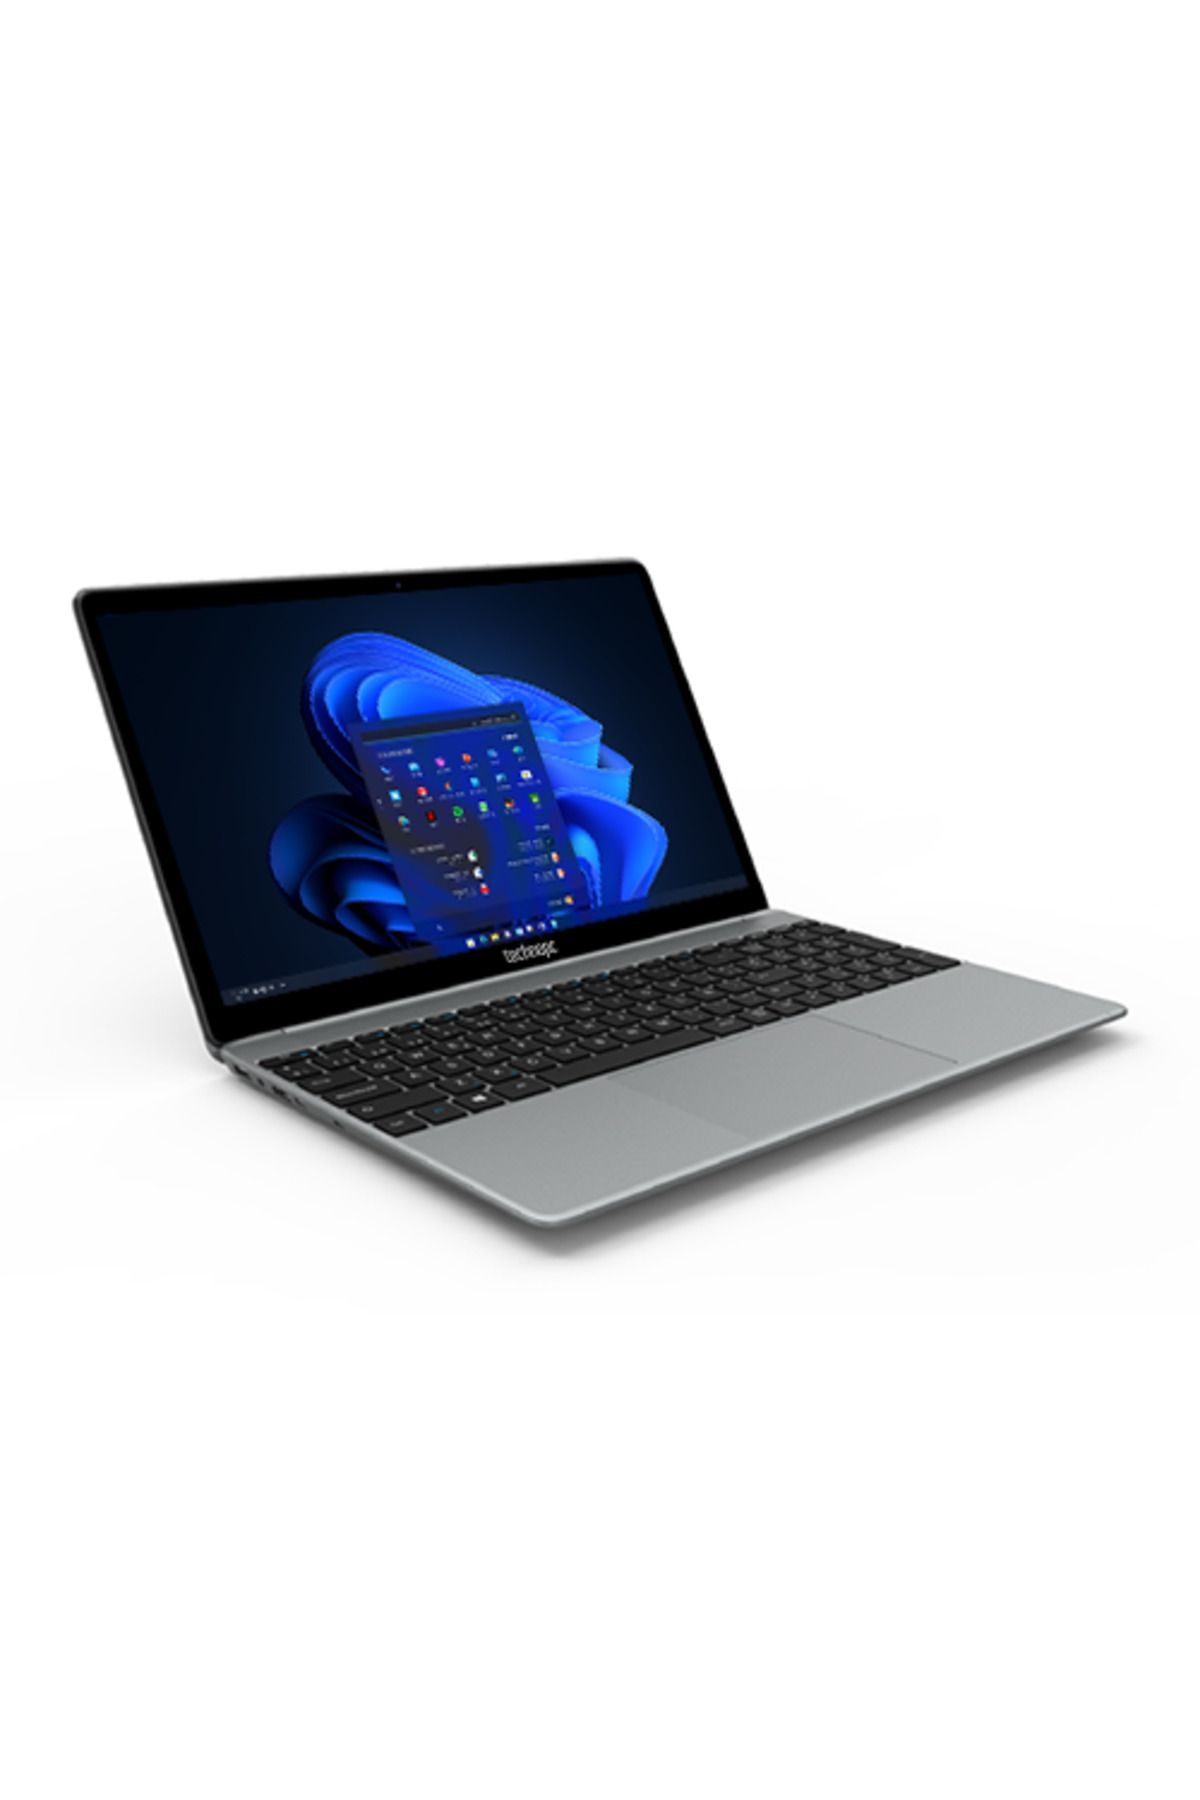 Technopc BlueEra Laptop N19 15.6'' FHD Intel i5-1135G7 8GB DDR4 256GB SSD Freedos Notebook